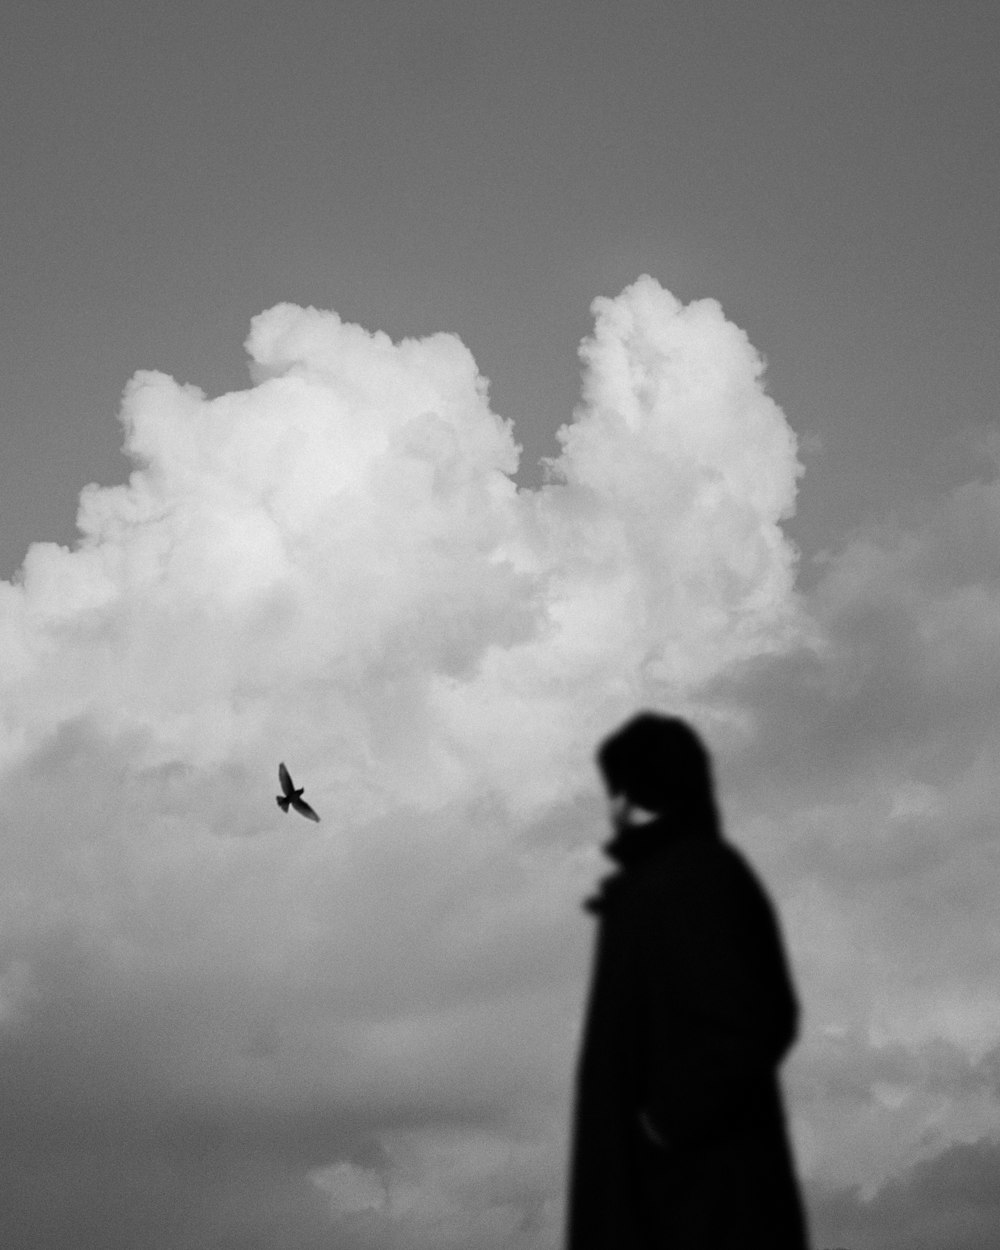 fotografia in scala di grigi della silhouette di una persona e di un uccello